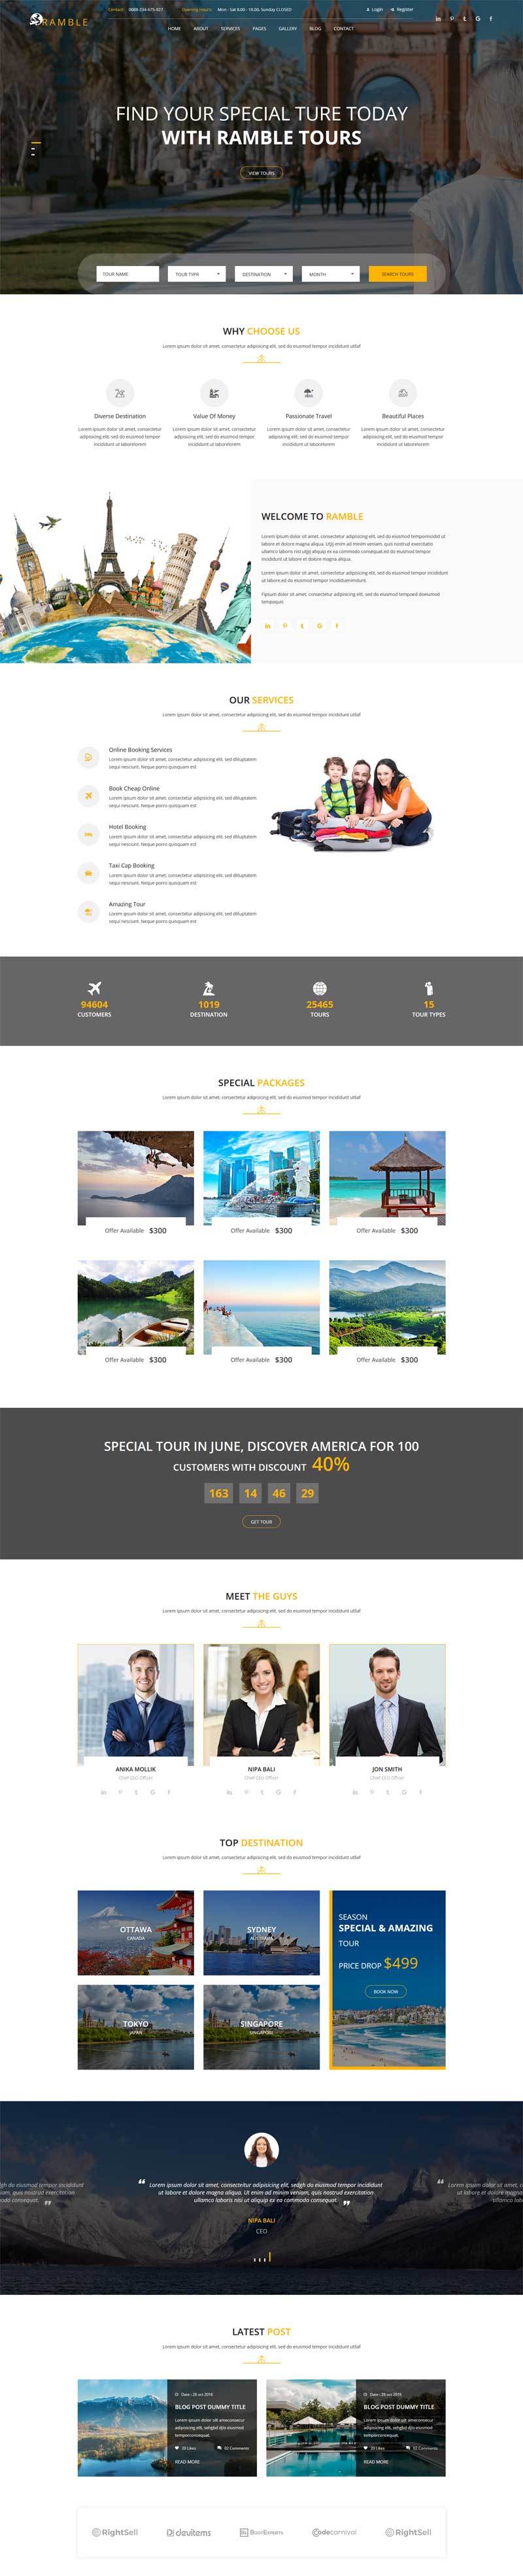 响应式旅游旅行社预订网站HTML模板6176